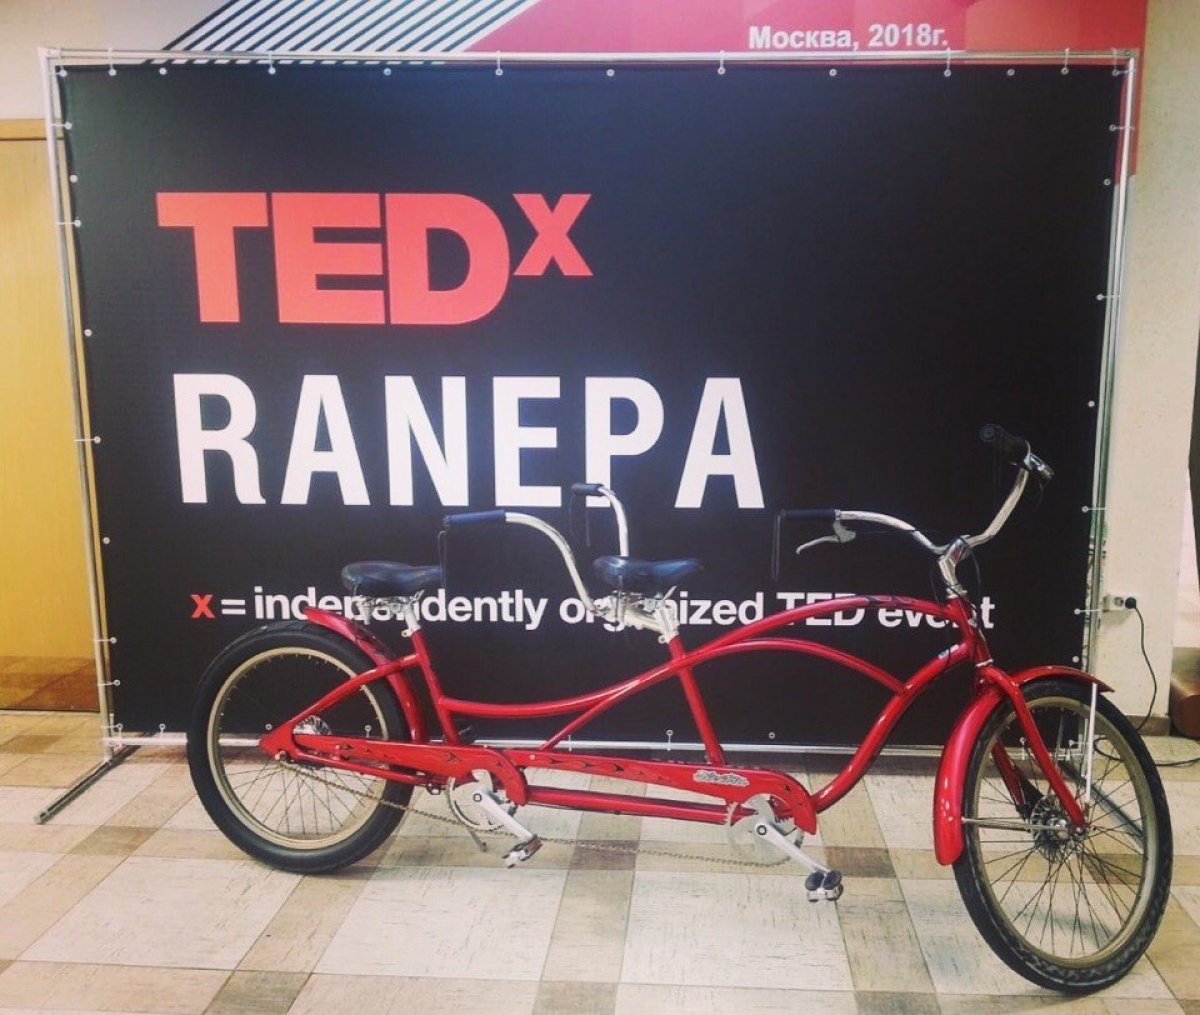 В РАНХиГС с большим успехом прошла всемирно известная и официально аккредитованная конференция TEDxRANEPA. Среди спикеров были политик Ирина Хакамада